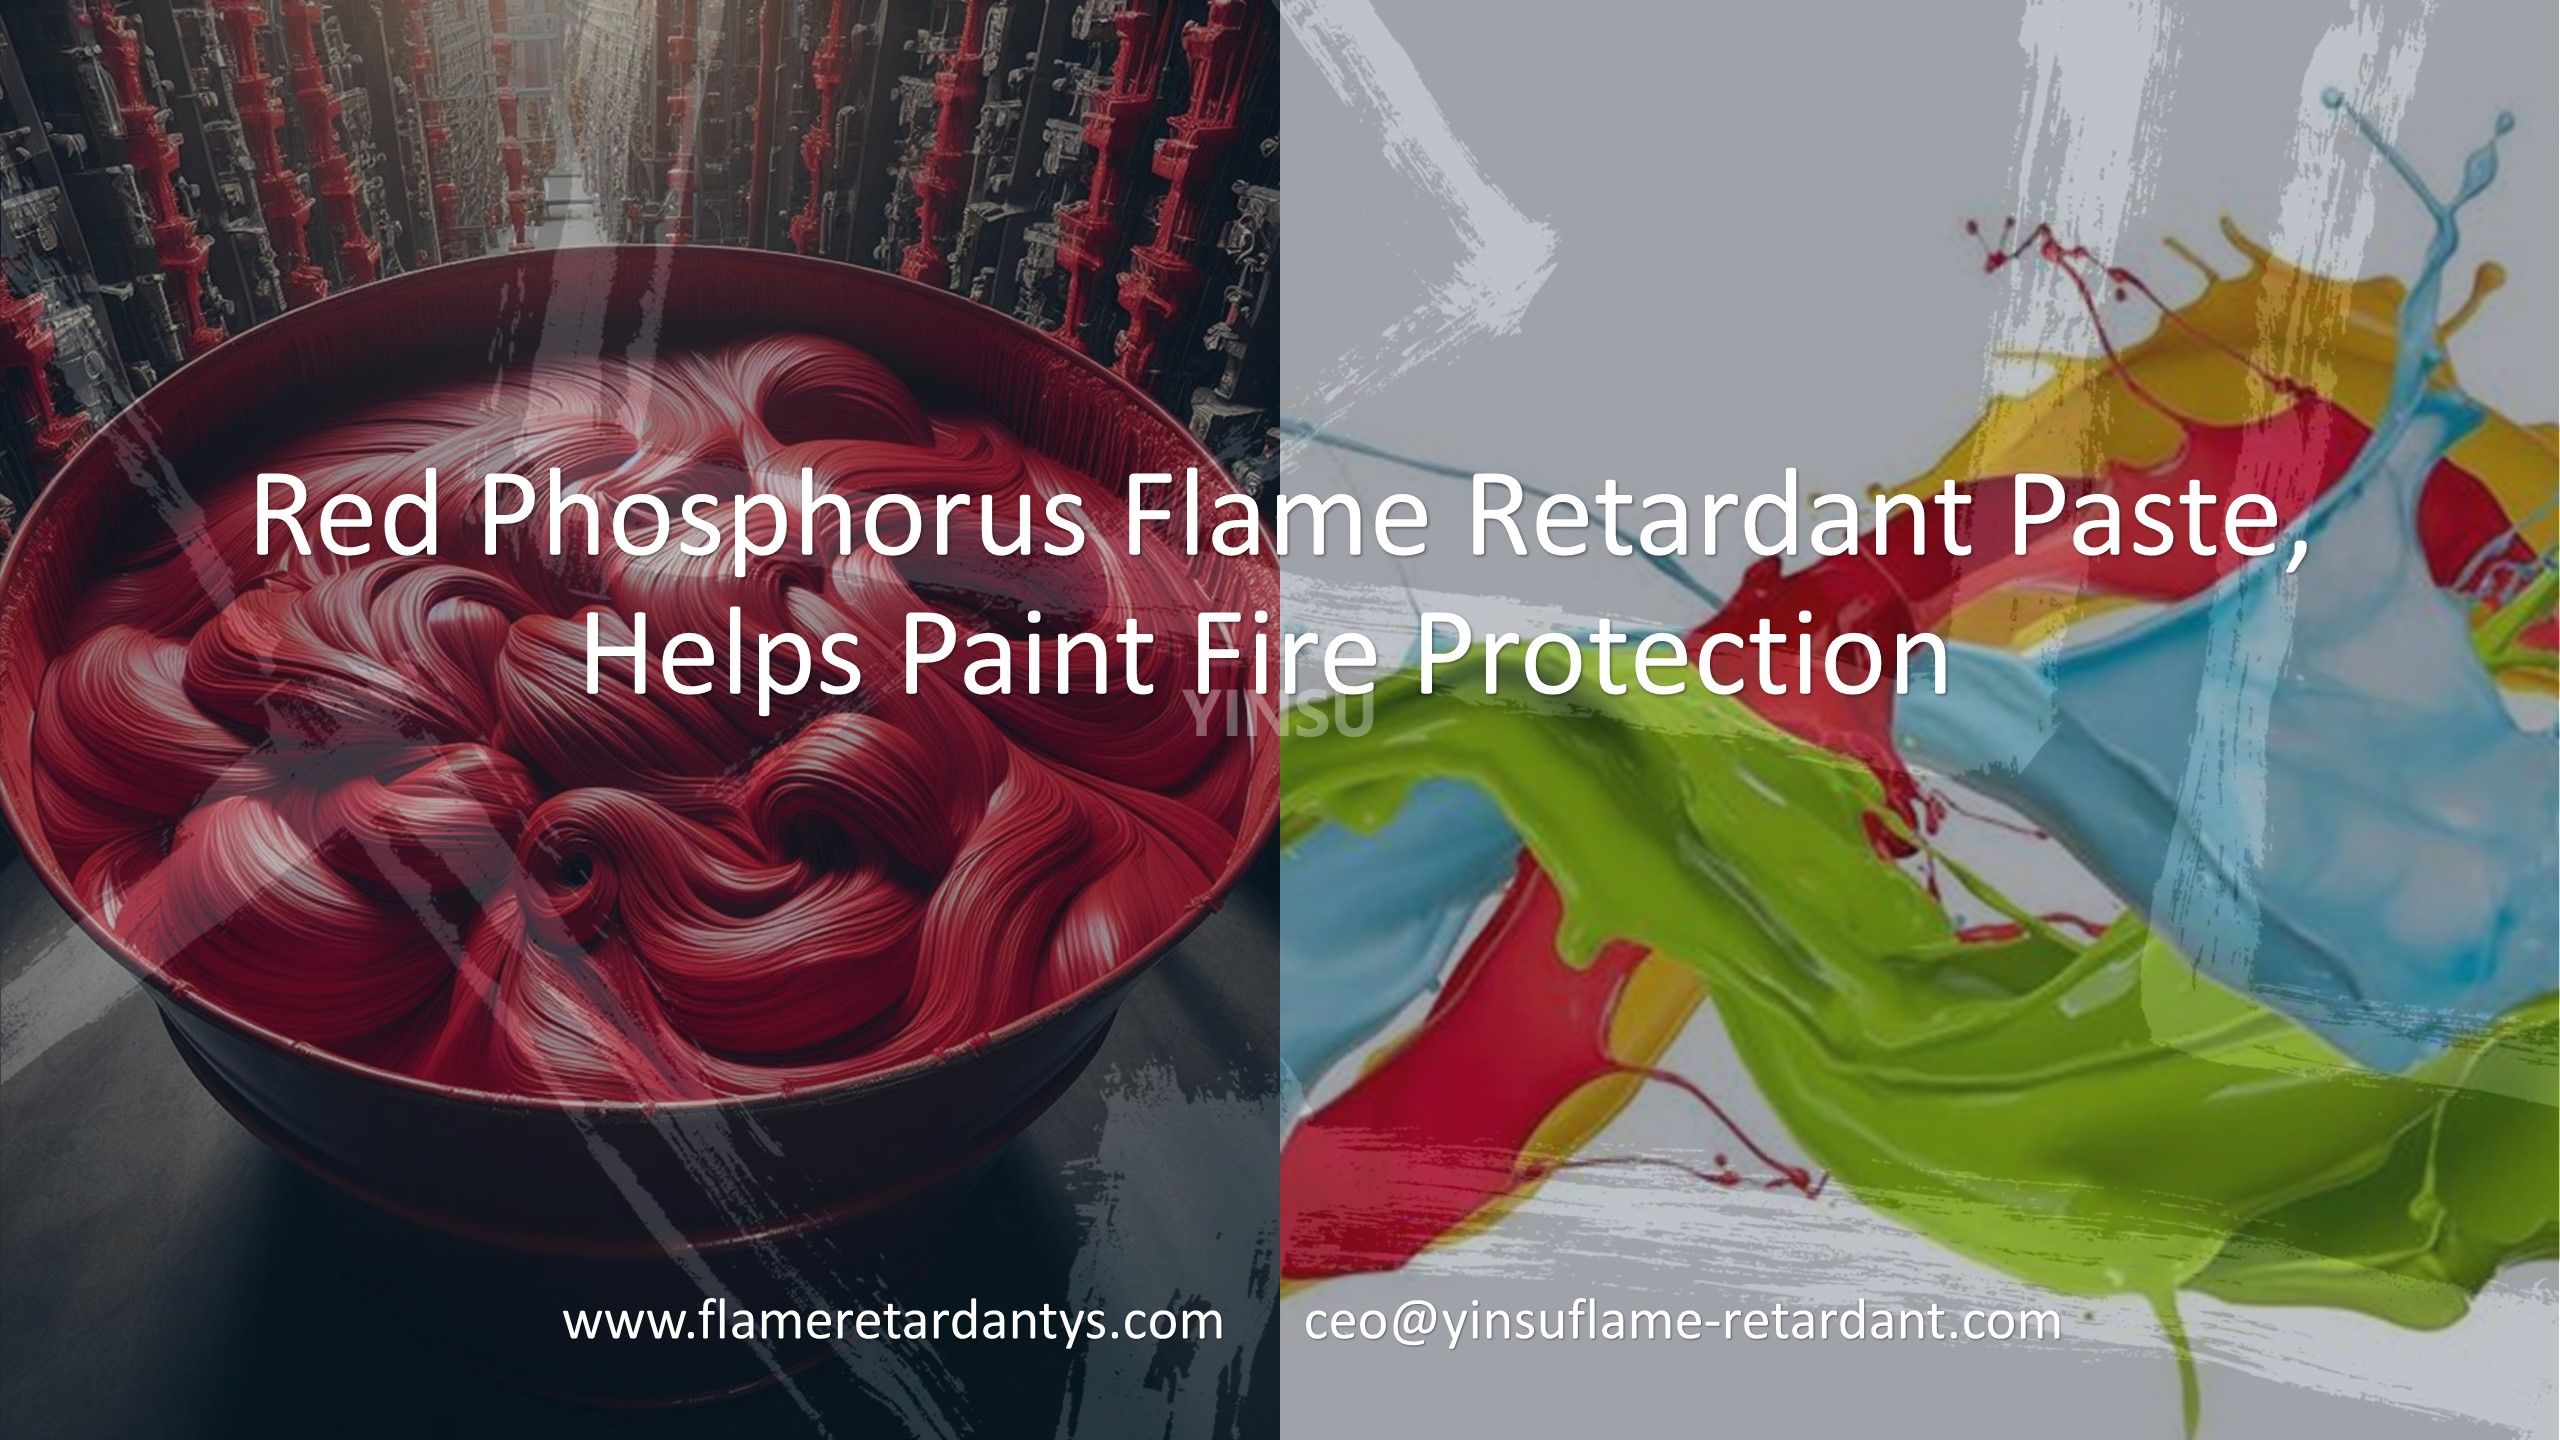 Pasta retardante de llama de fósforo rojo, ayuda a pintar la protección contra incendios